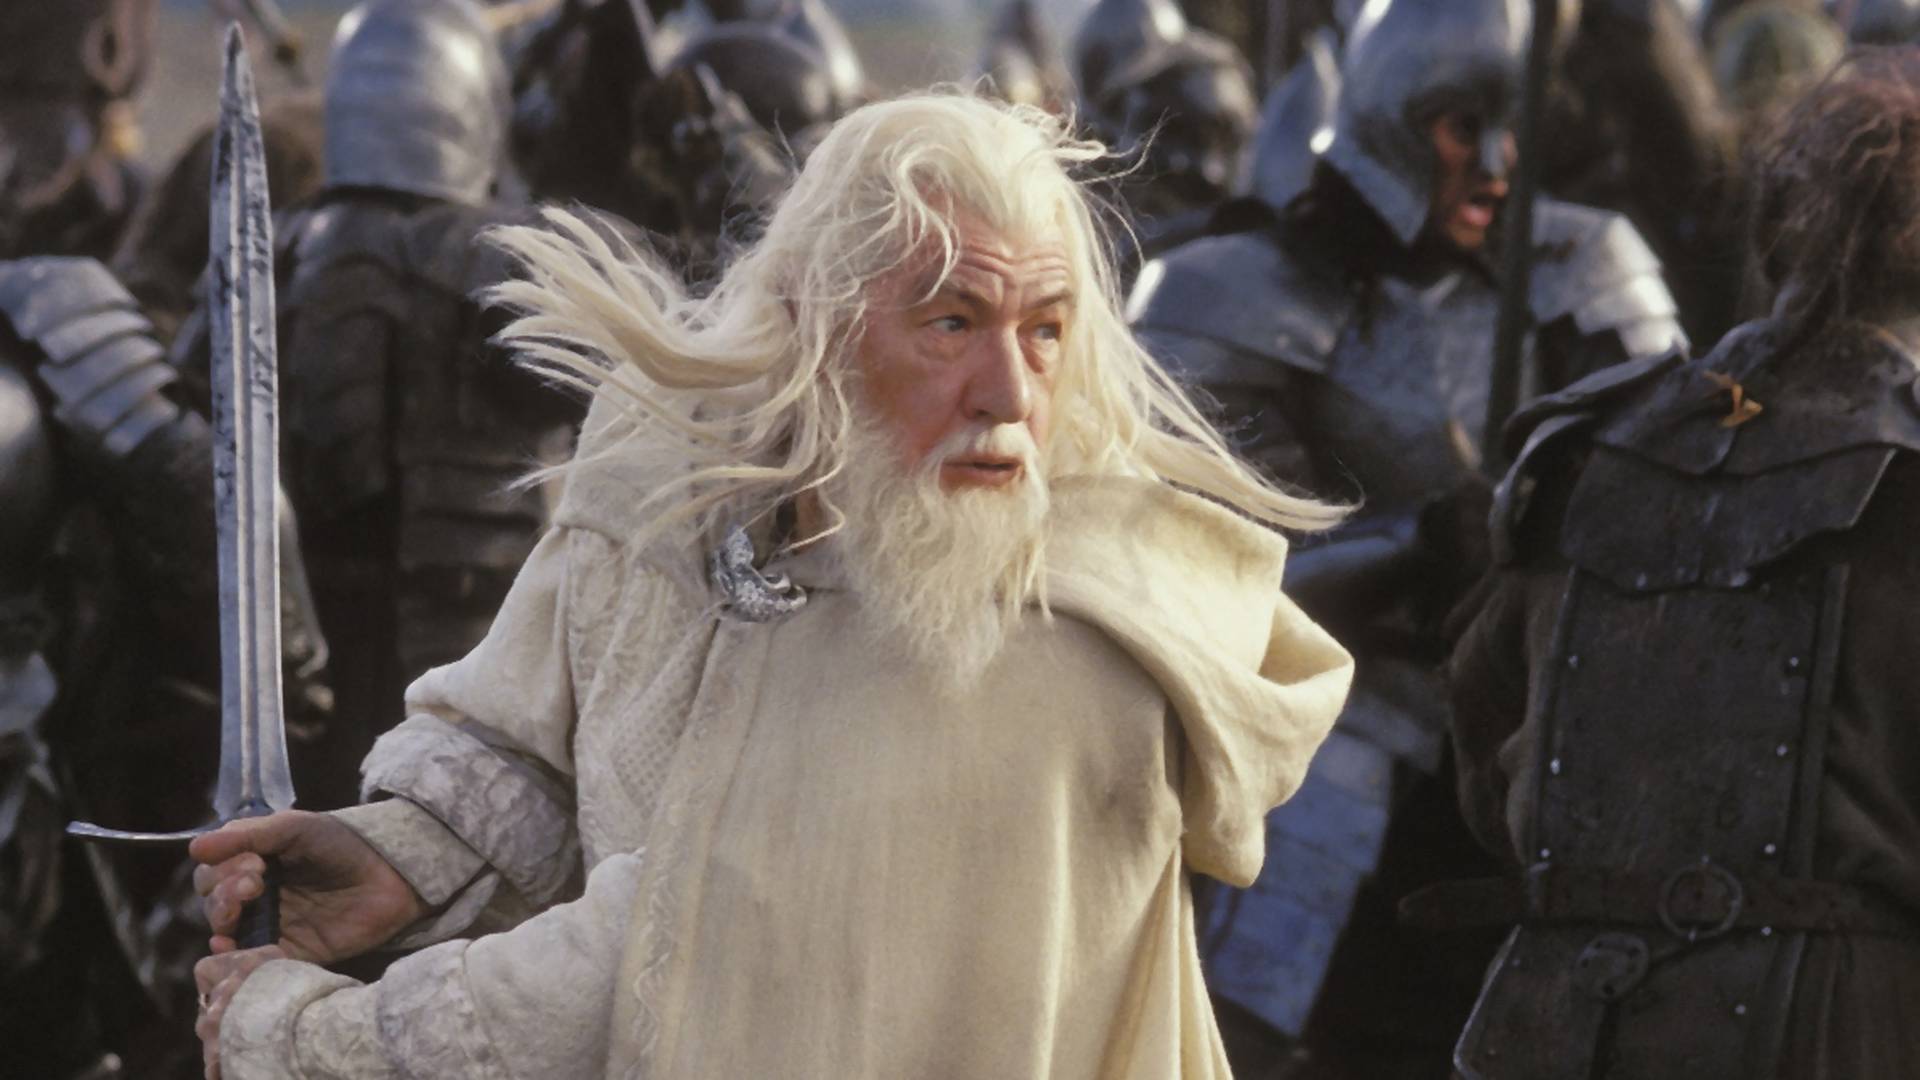 "Tolkien forog a sírjában" - nyilatkozta az előkészületben lévő sorozatról a Gyűrűk ura egyik szereplője